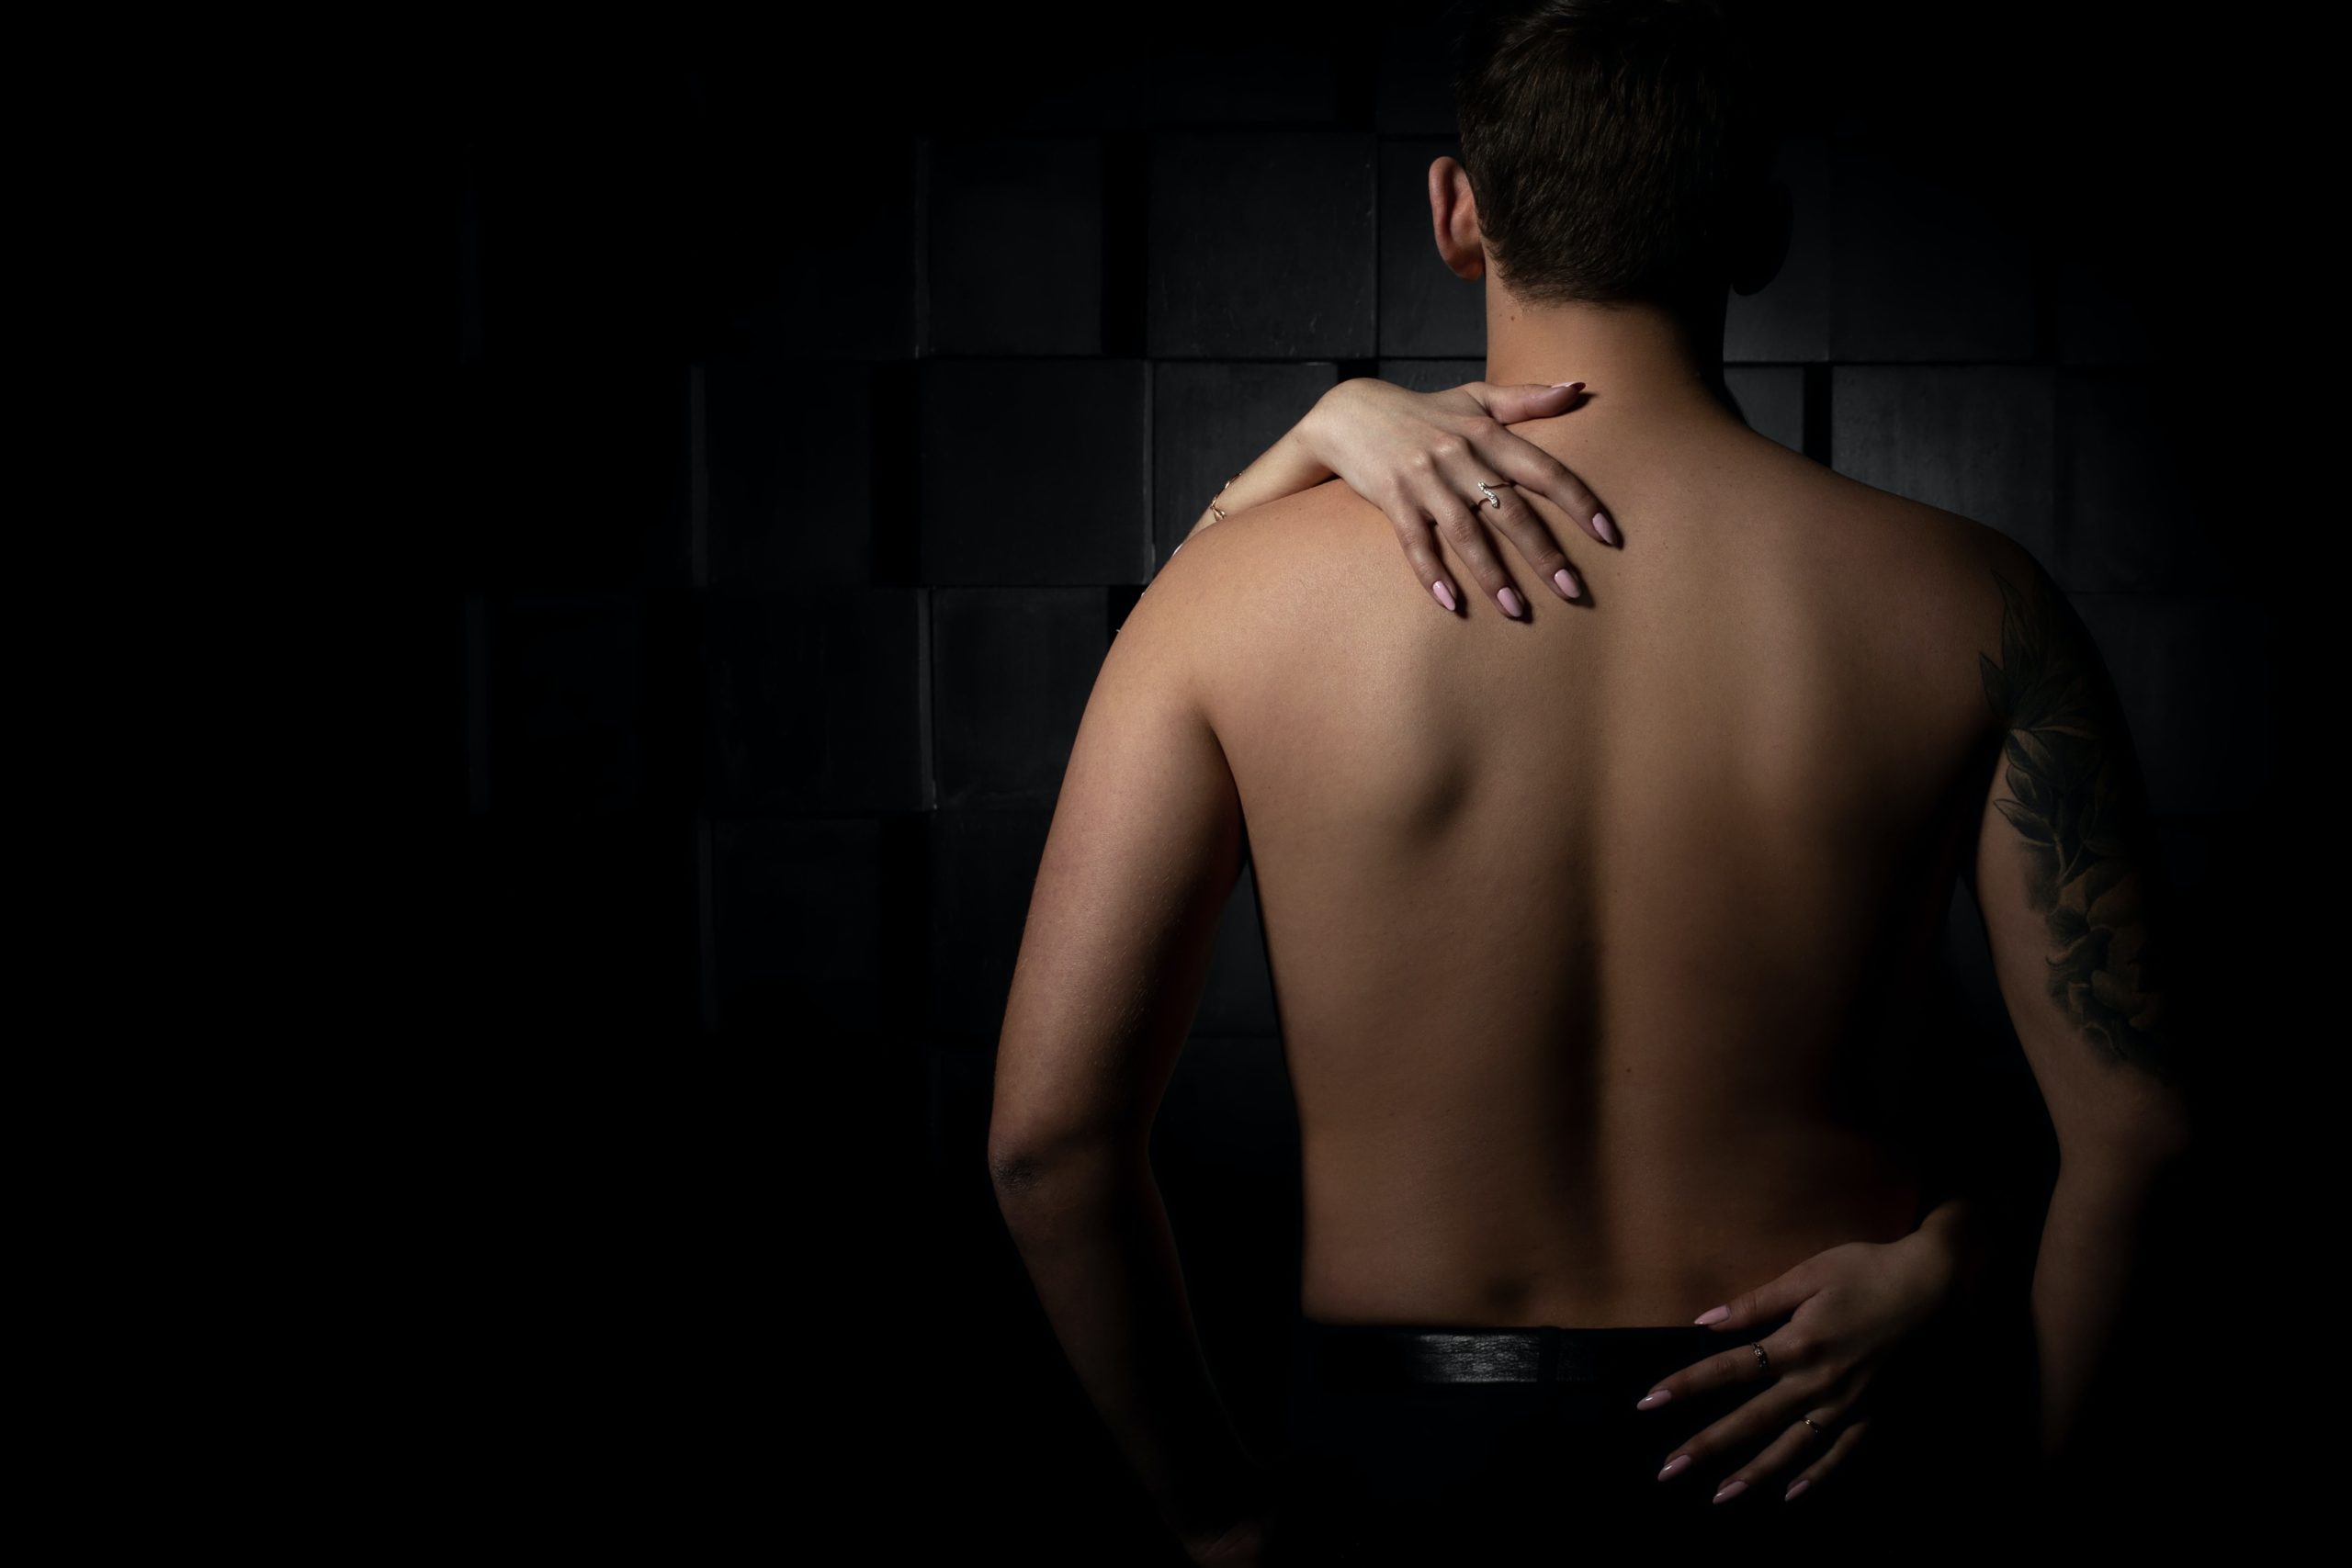 Beneficios del sexo: fortalece la espalda